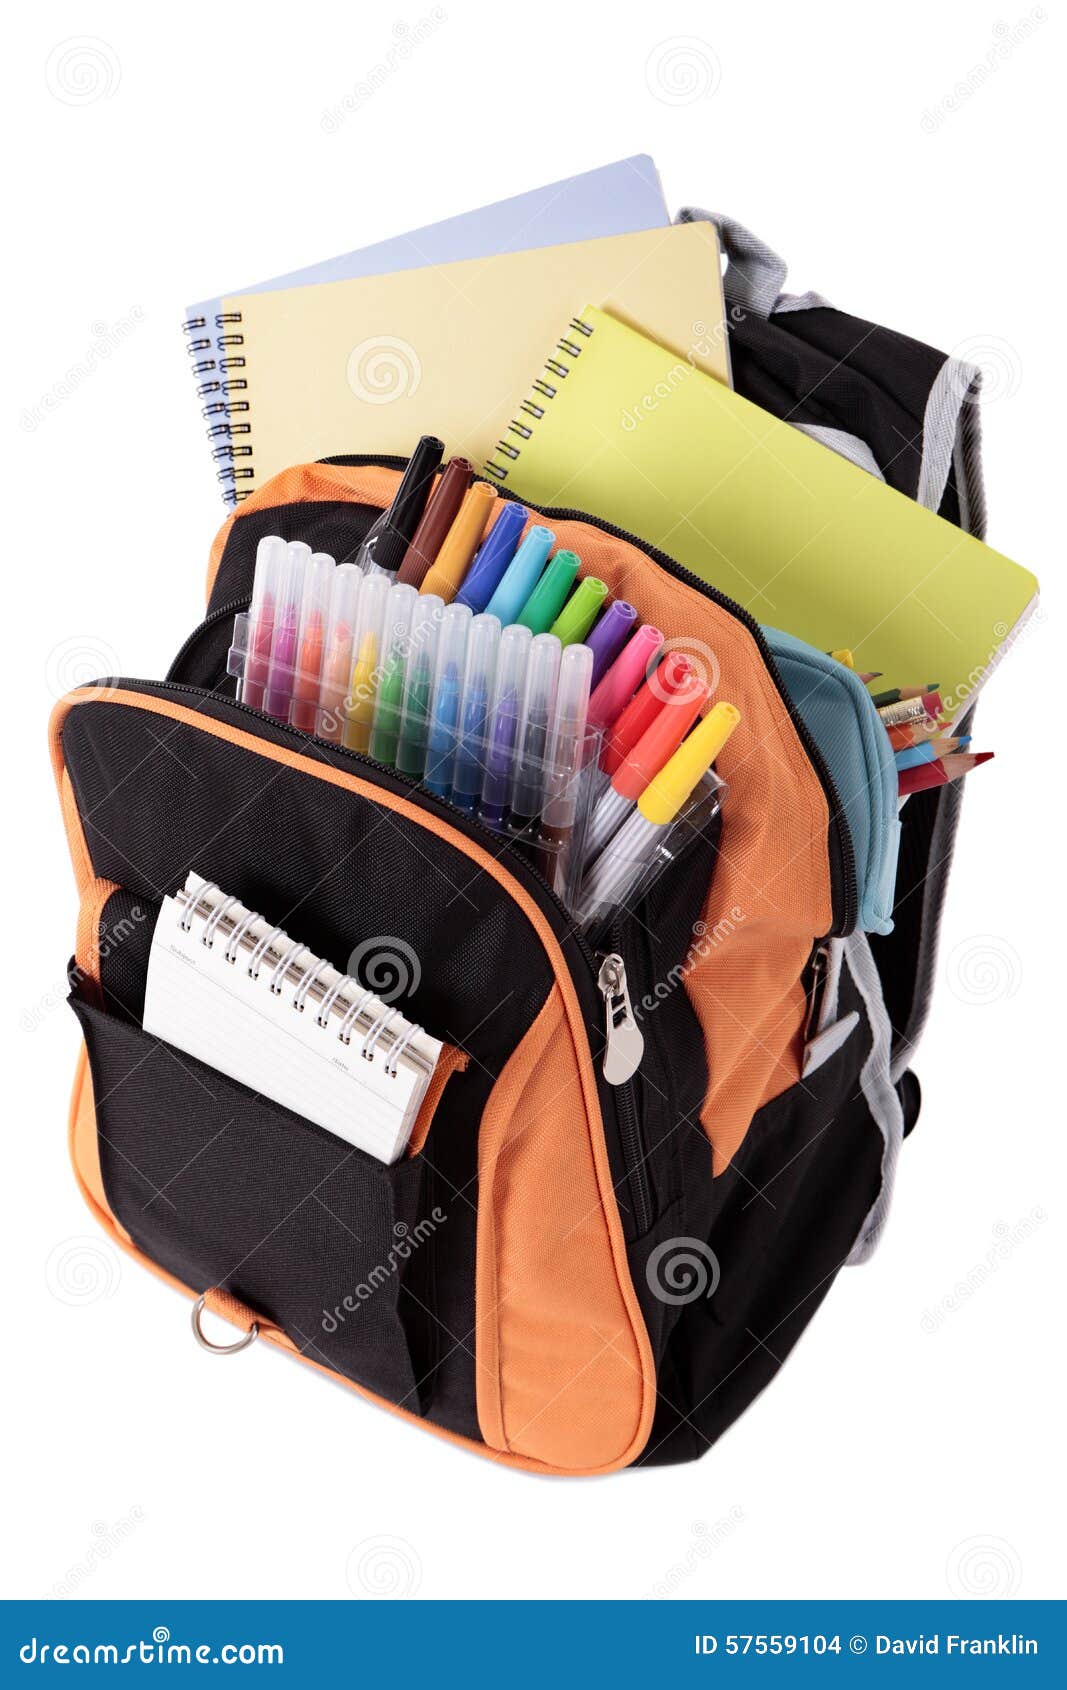 Rectangular Bag For School Books | vlr.eng.br